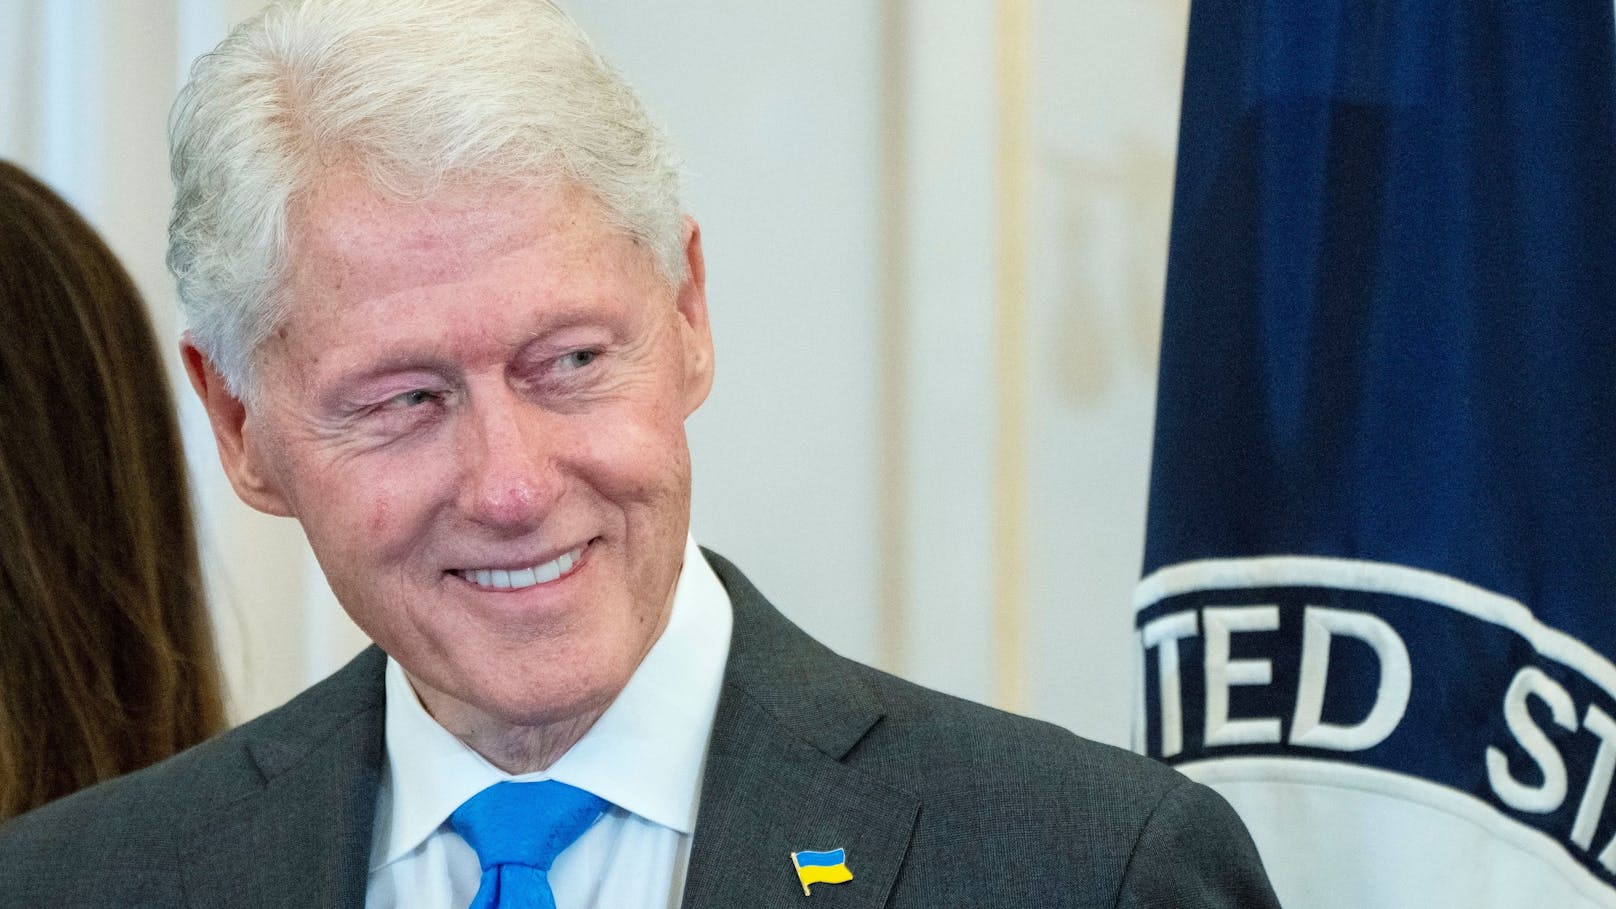 Ex-US-Präsident Bill Clinton wird über 50 Mal in den Gerichtsakten genannt. Virginia Roberts Giuffre hat Clinton aber kein Fehlverhalten vorgeworfen, und es gibt keinen Hinweis darauf, dass die versiegelten Unterlagen Beweise für ein illegales Verhalten Clintons enthalten.